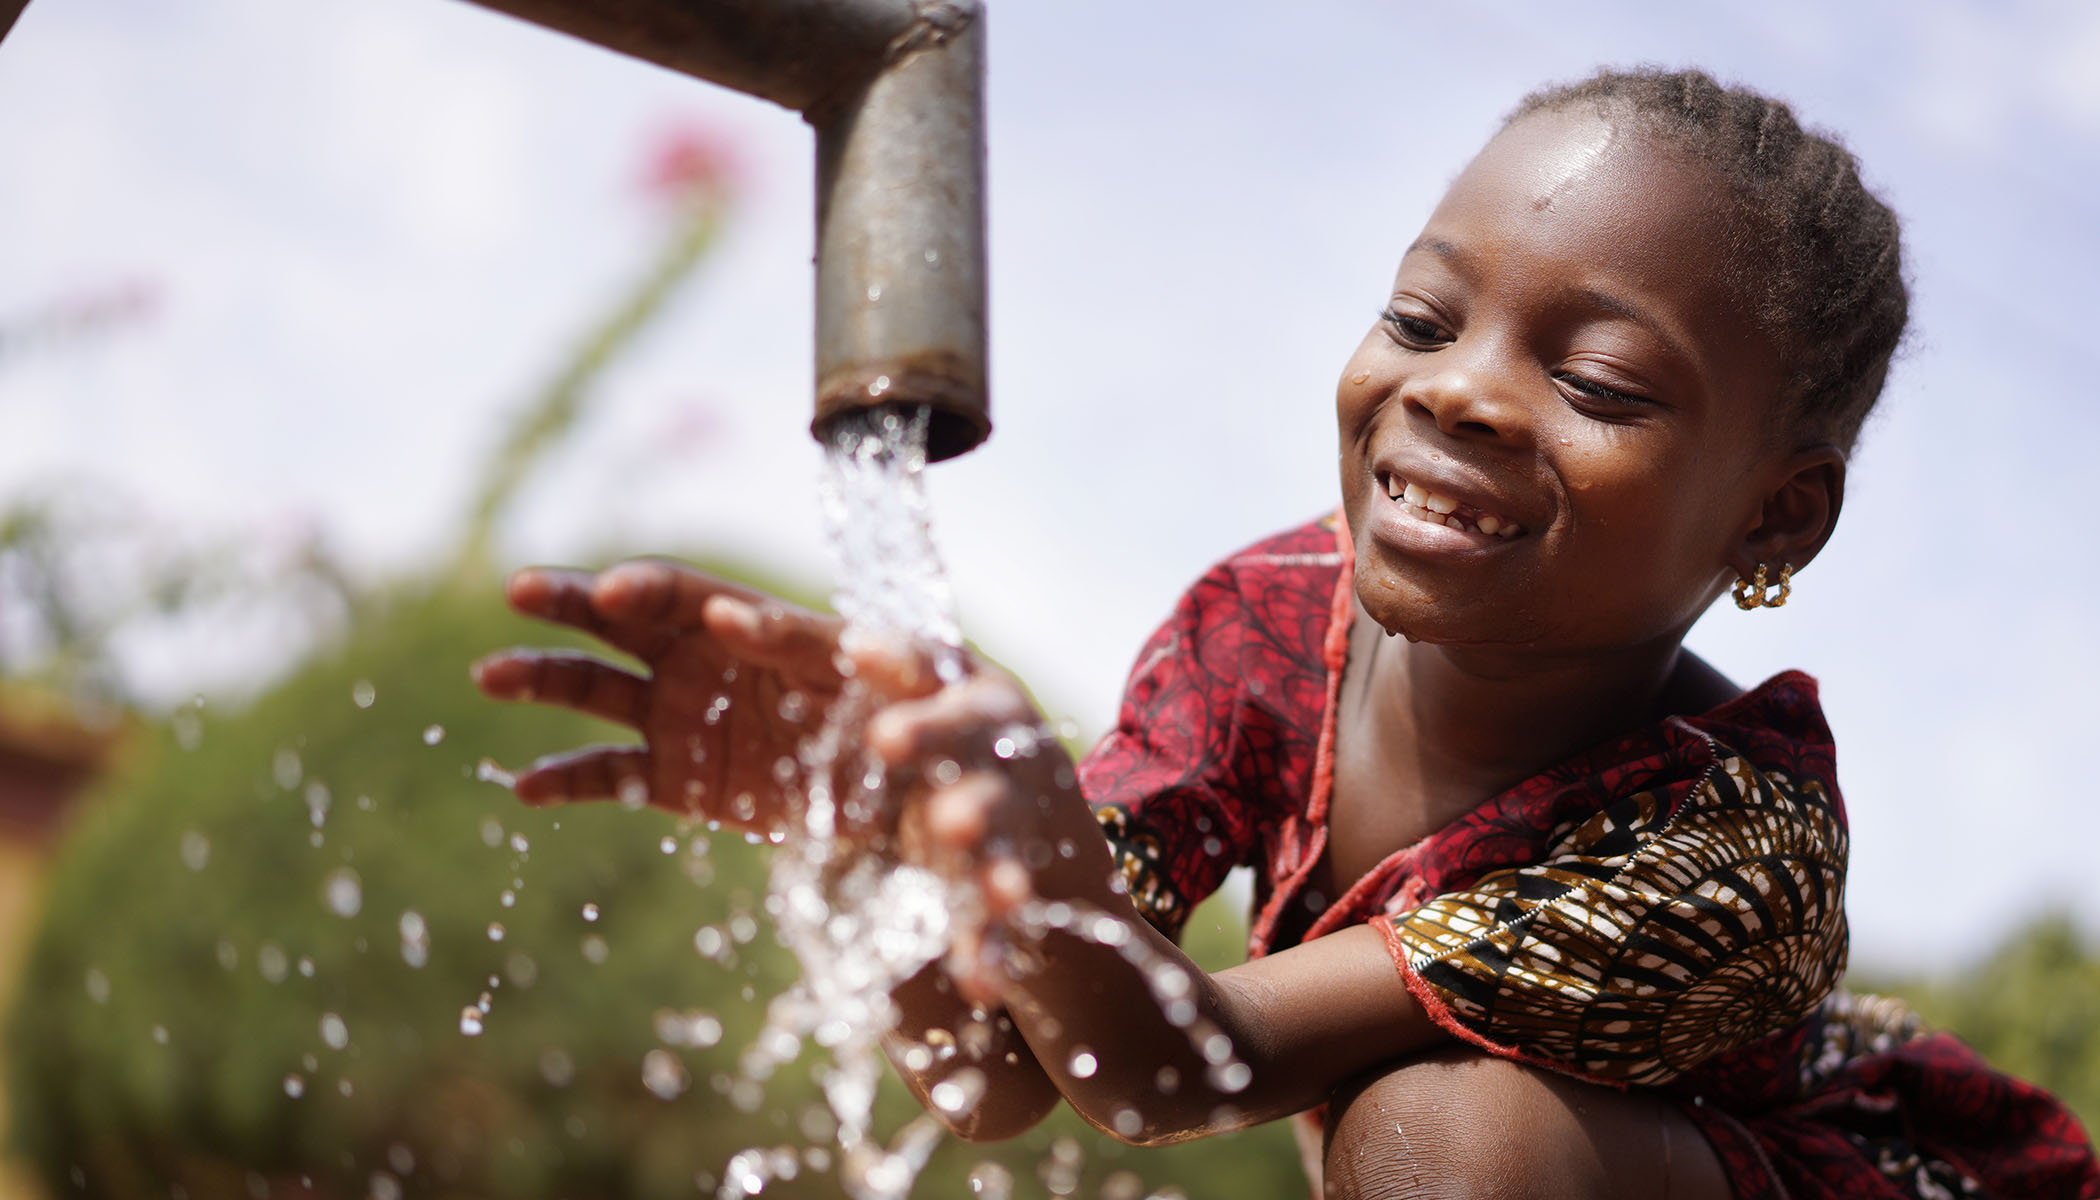 Criança sorrindo com as mãos na água saindo de uma torneira